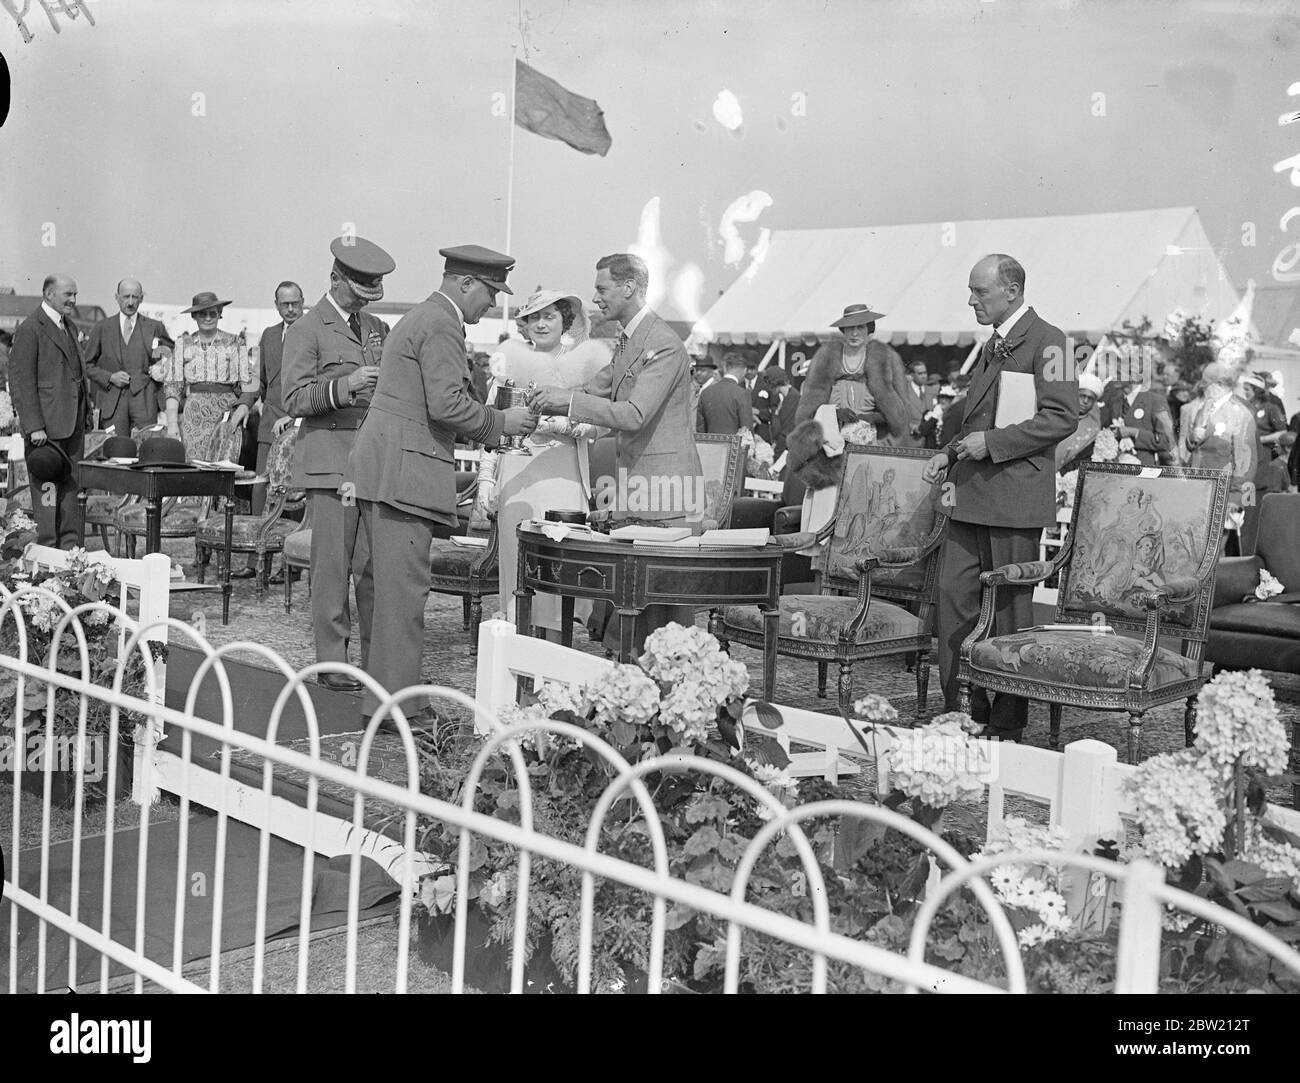 El Rey presenta la copa al Comandante de Ala, D. V. Carnegie, AFC (Ministerio del Aire) ganador de la Carrera de la Sede. El Rey y la Reina observaron el desfile anual de la Fuerza Aérea Real en el Aeródromo de Hendon. 26 de junio de 1937 Foto de stock